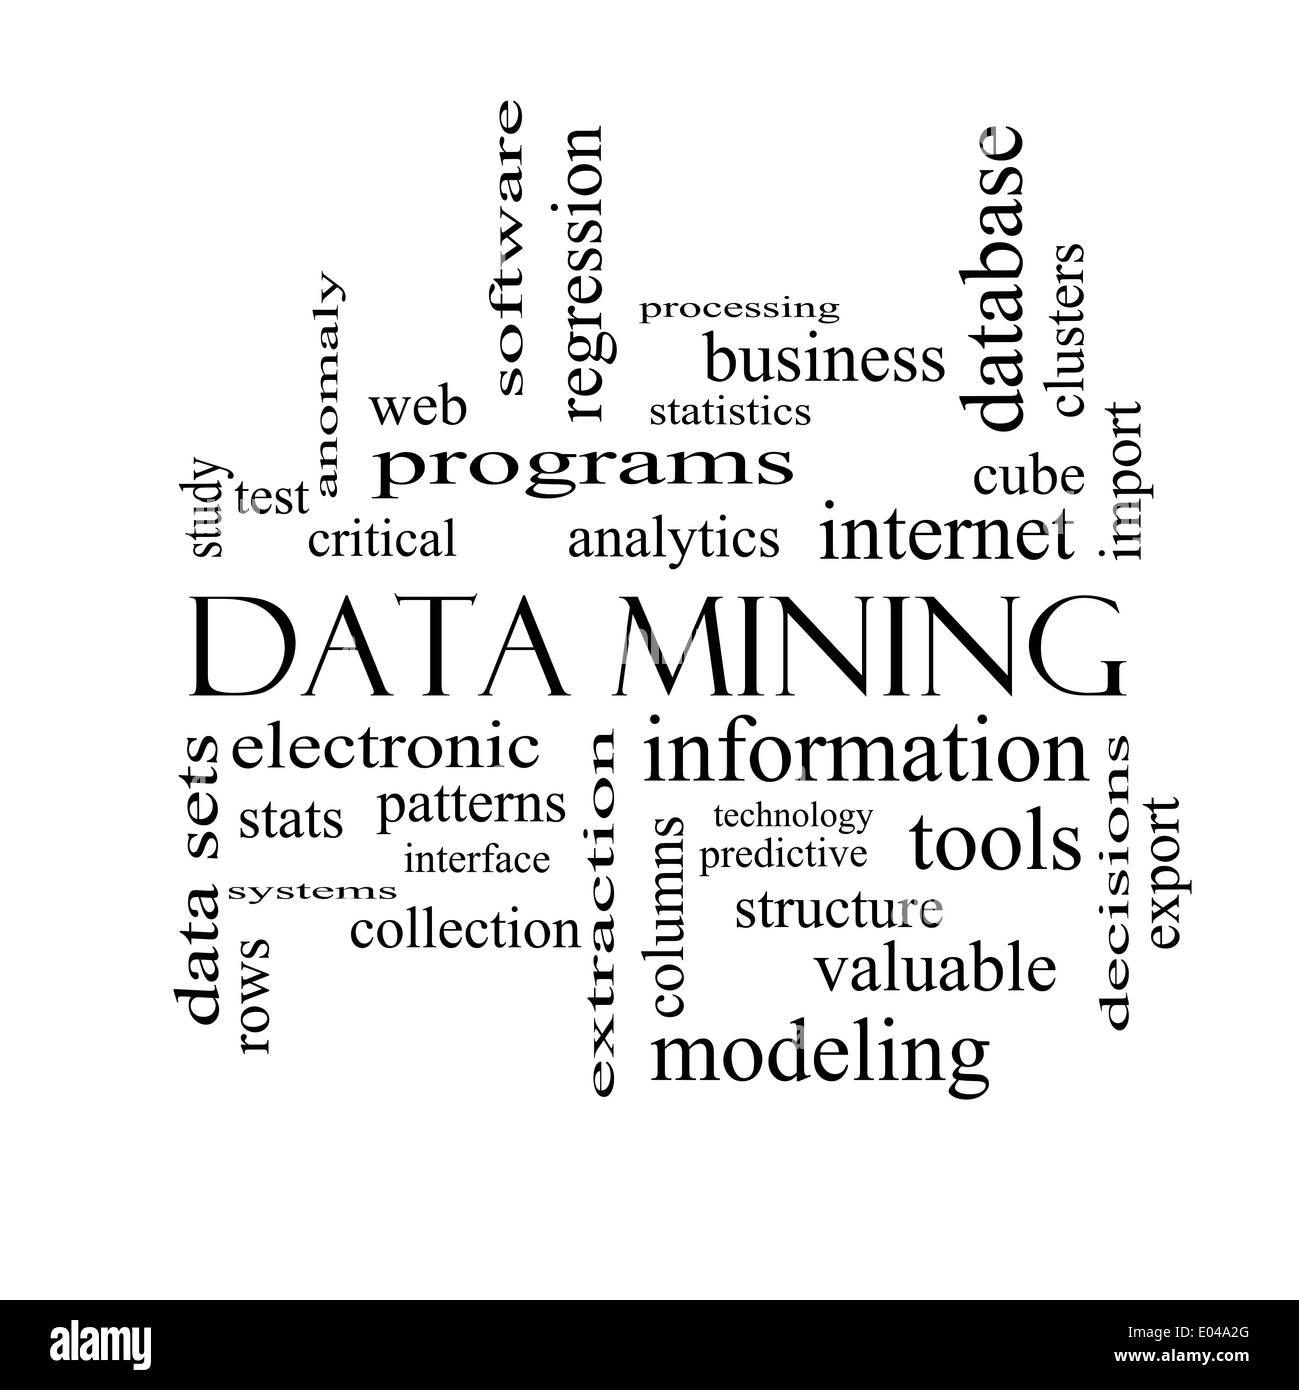 Il data mining di parola il concetto di cloud in bianco e nero con grande termini quali analytics, internet, statistiche e più. Foto Stock